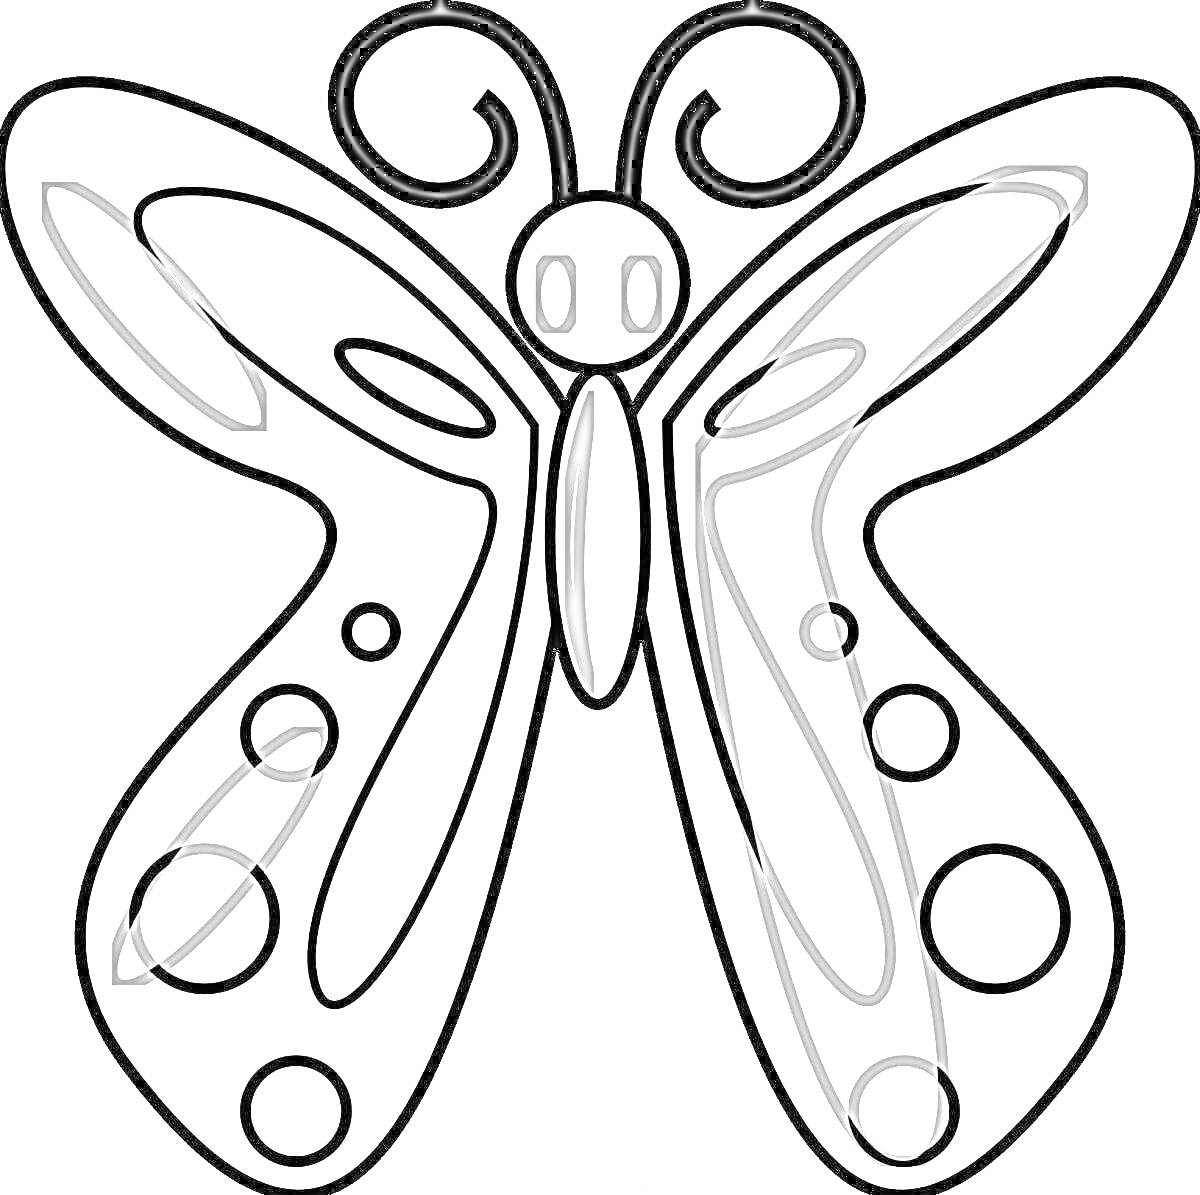 Раскраска Контур бабочки с завитками на усиках, крупными и мелкими кругами на крыльях, внутри которых геометрические фигуры.